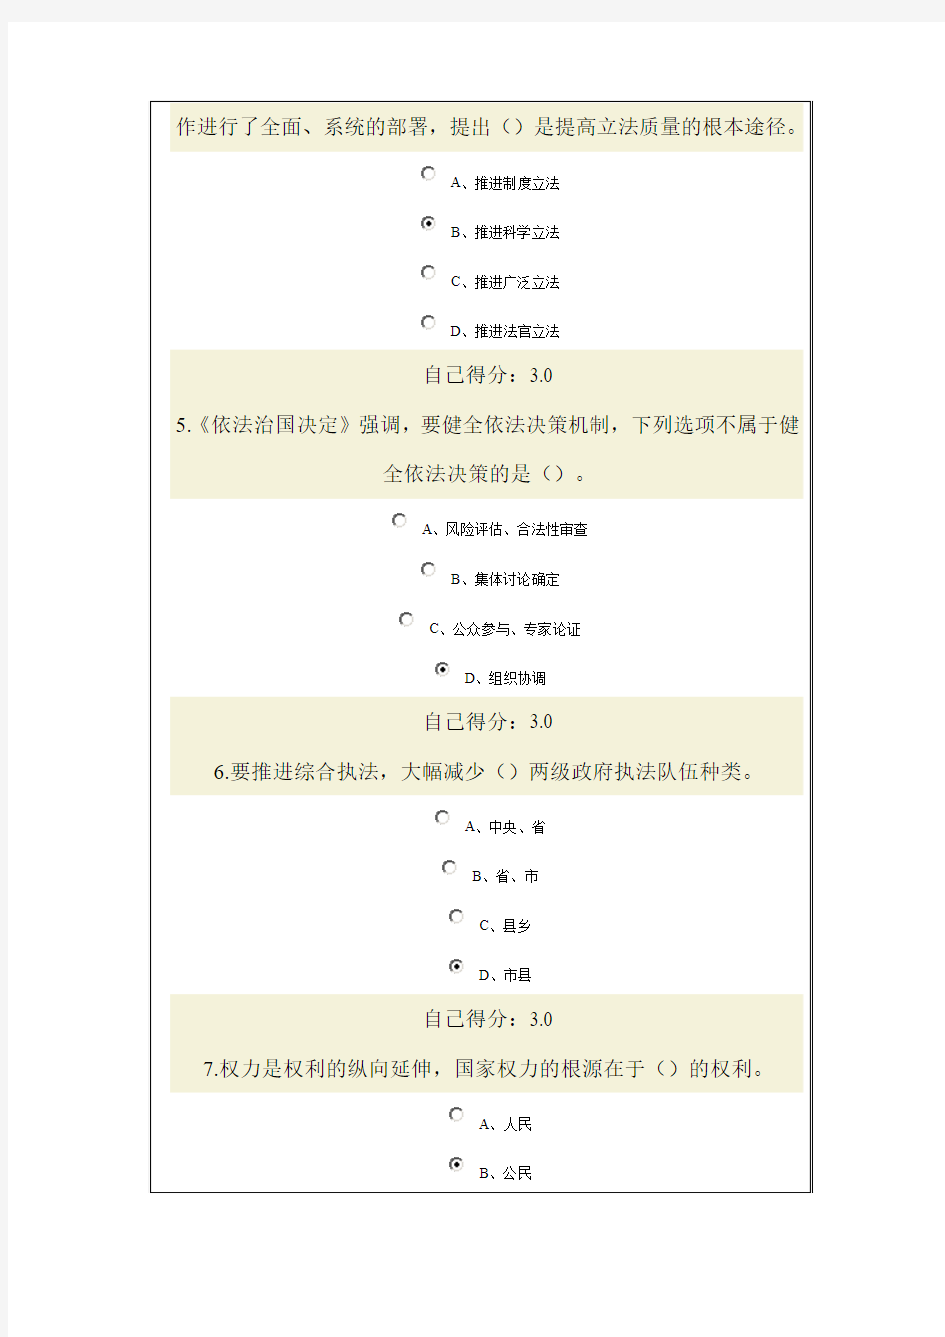 2015年广西教育培训网络考试《依法治国与依法行政》试题与答案(97分)